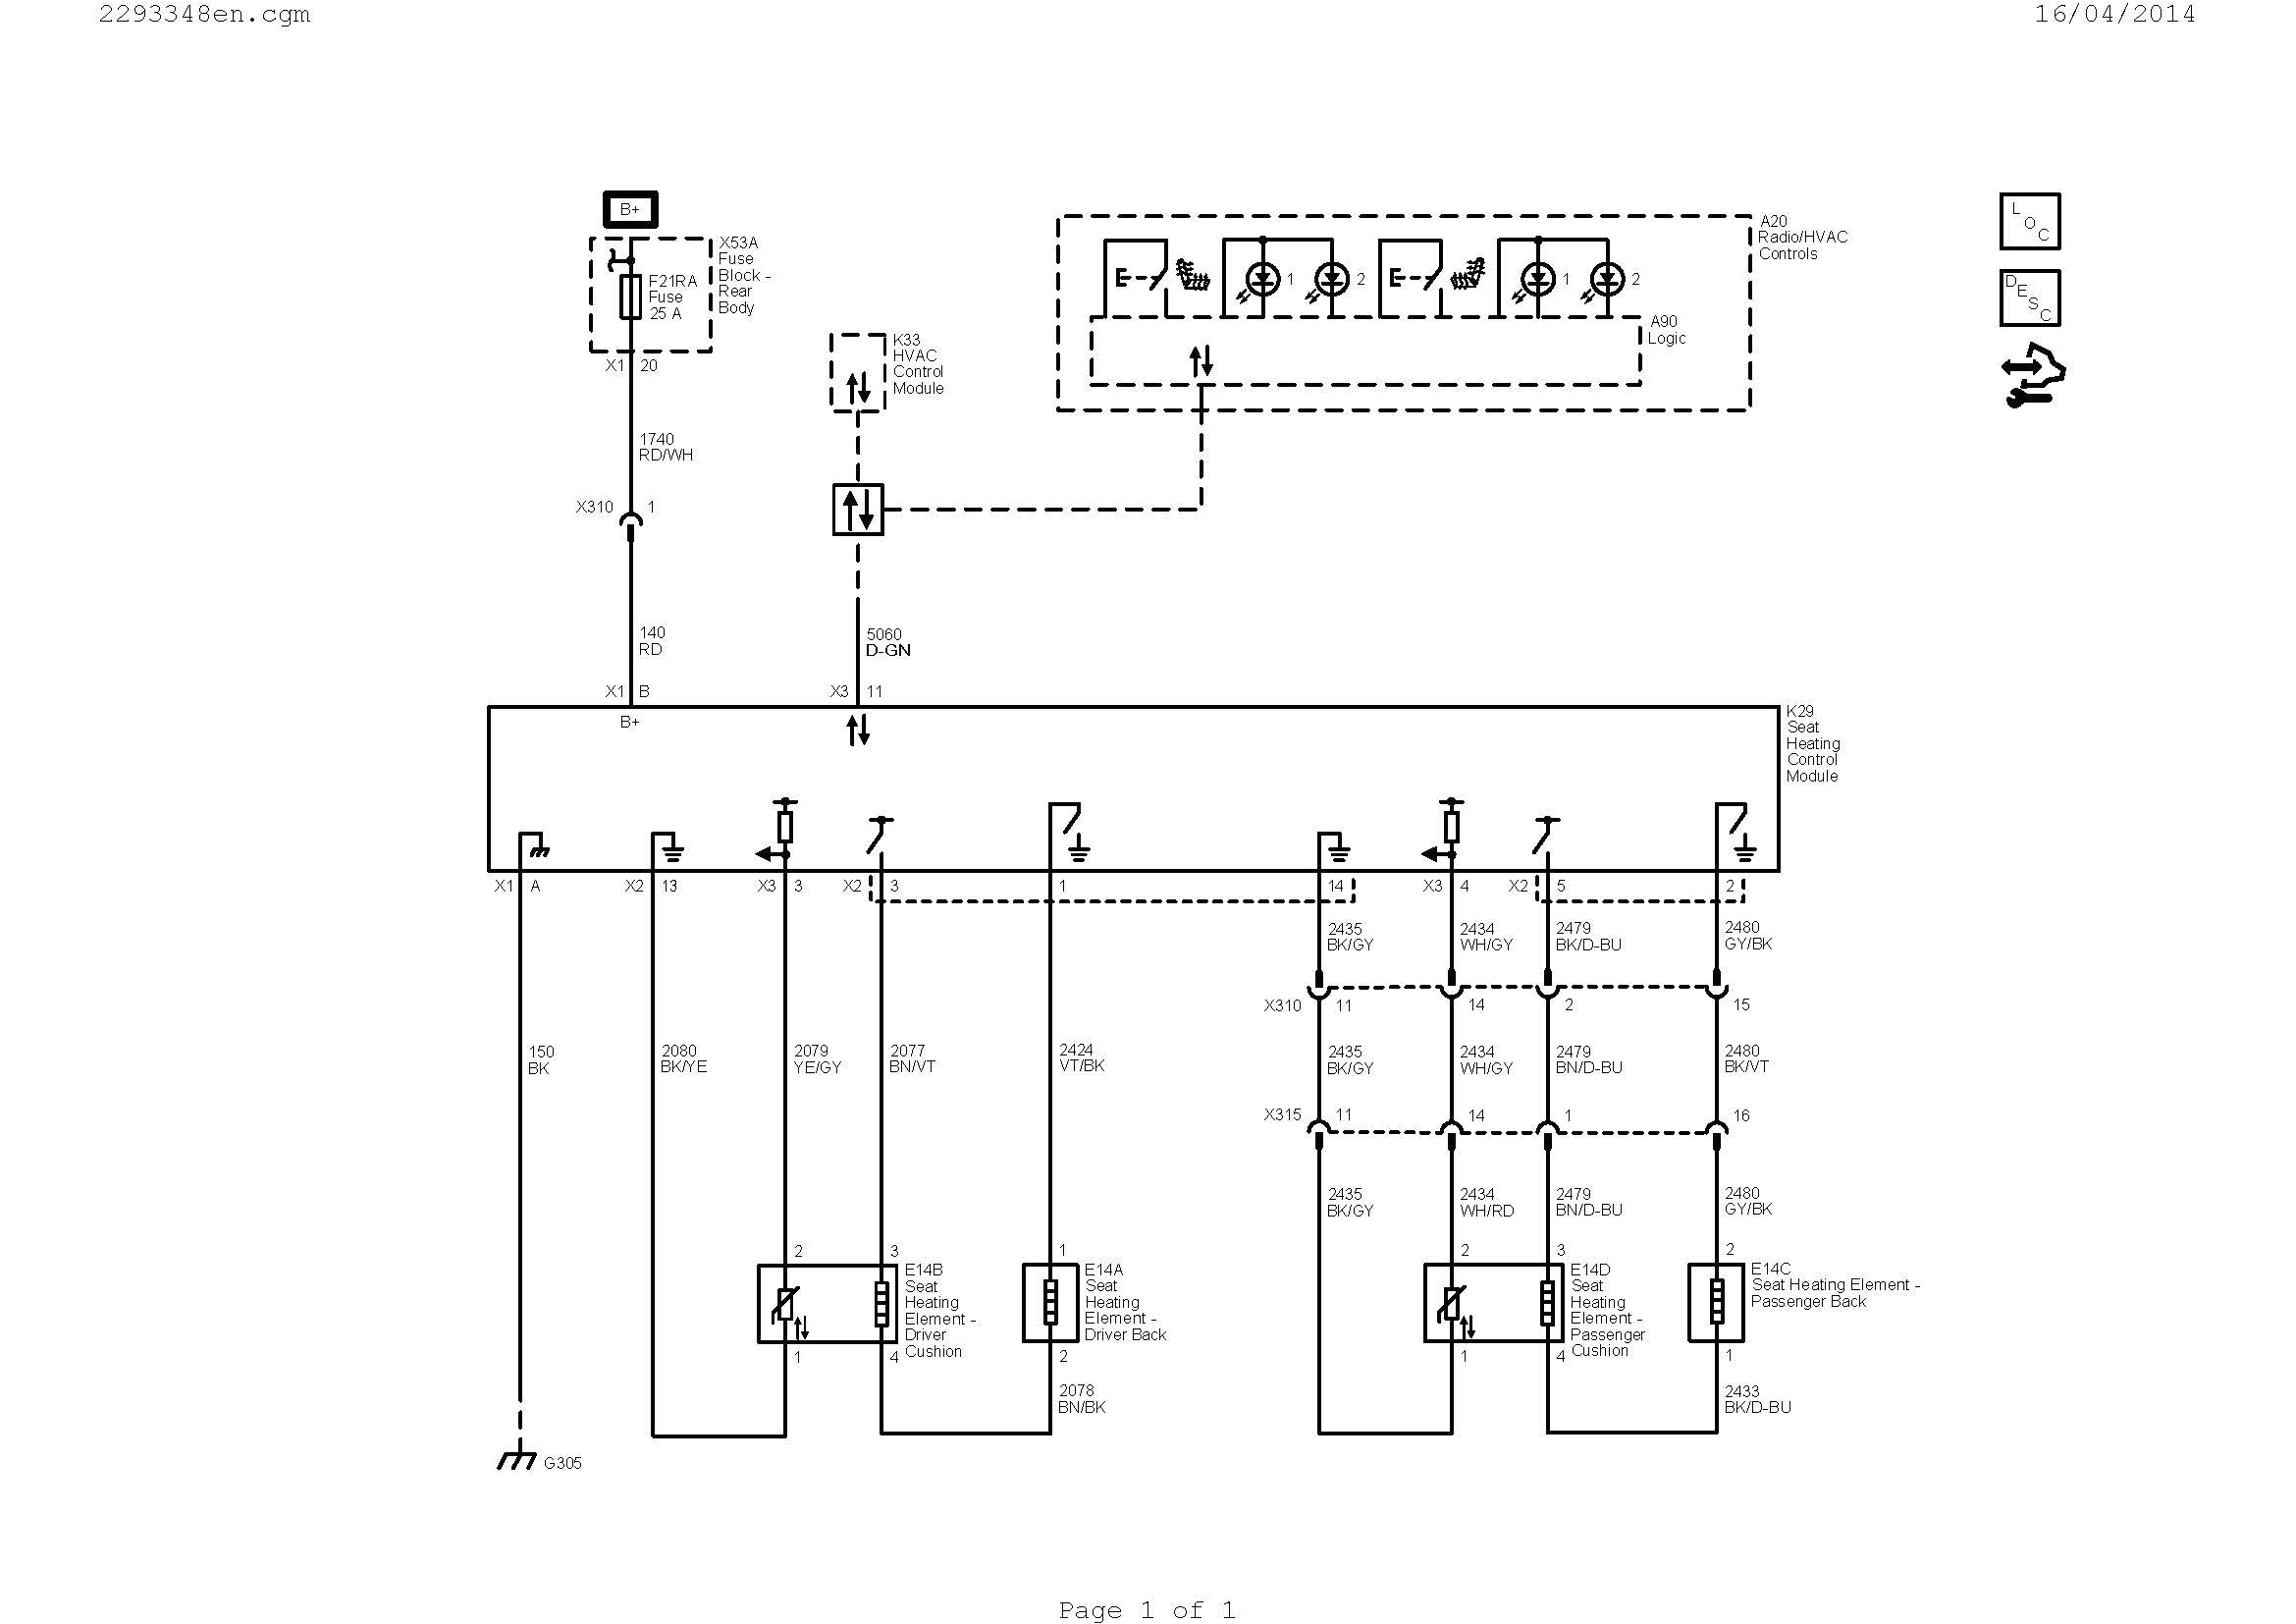 siemens relay wiring diagram wiring diagram gpoverload relay wiring diagram wiring diagram siemens relay wiring diagram